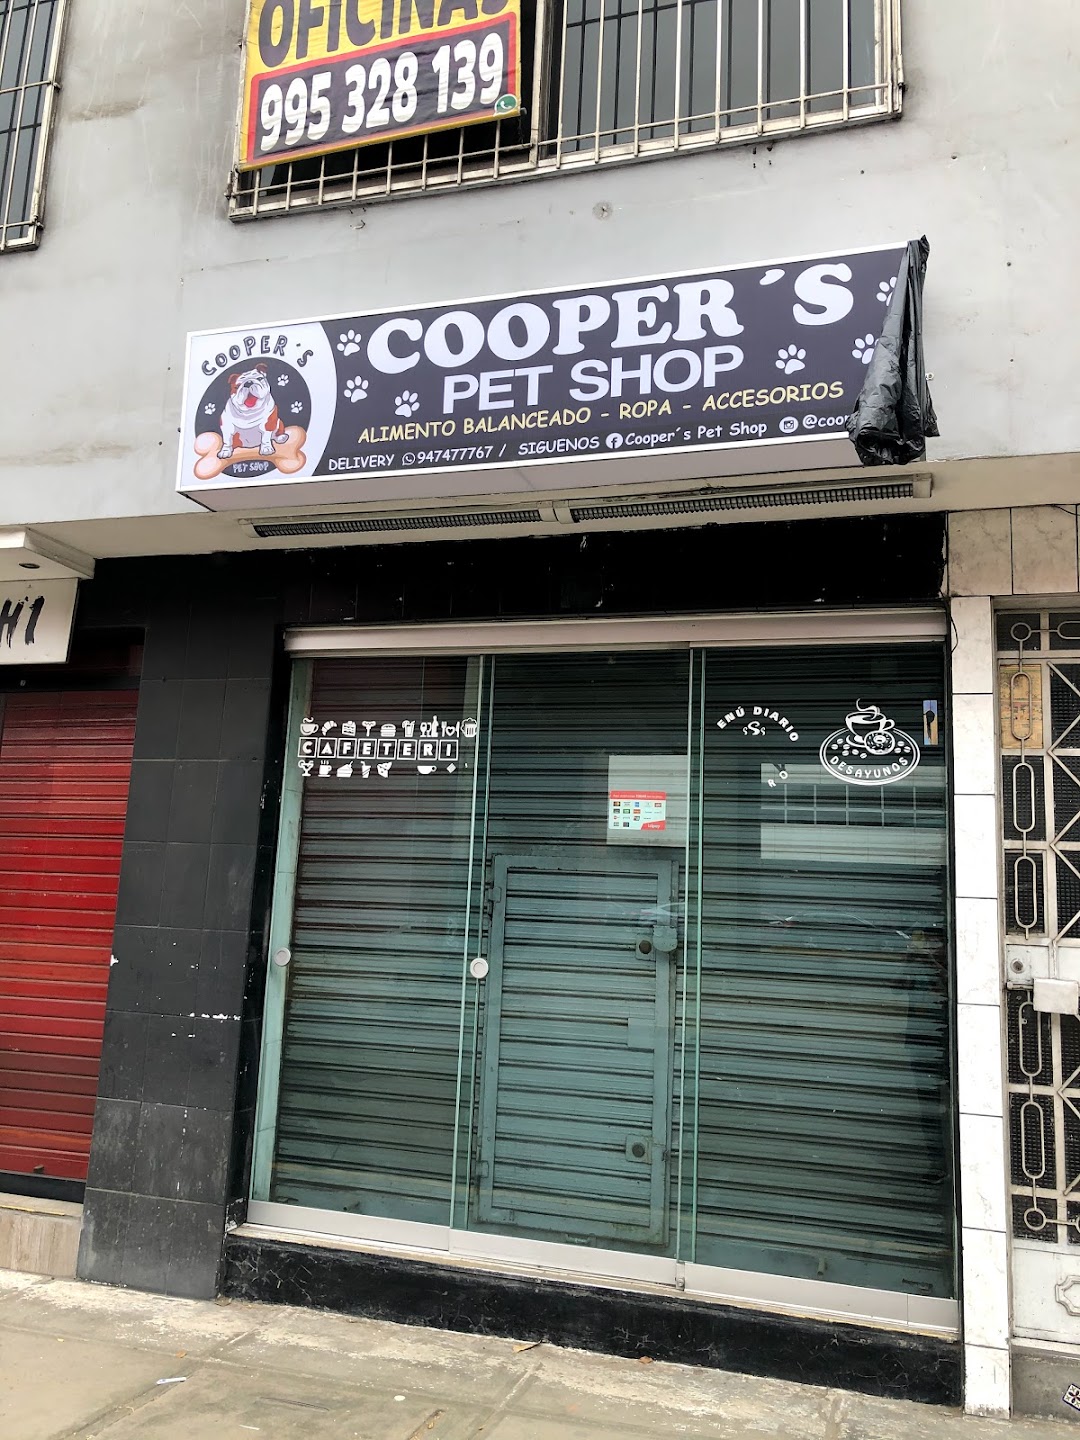 Coopers Pet shop